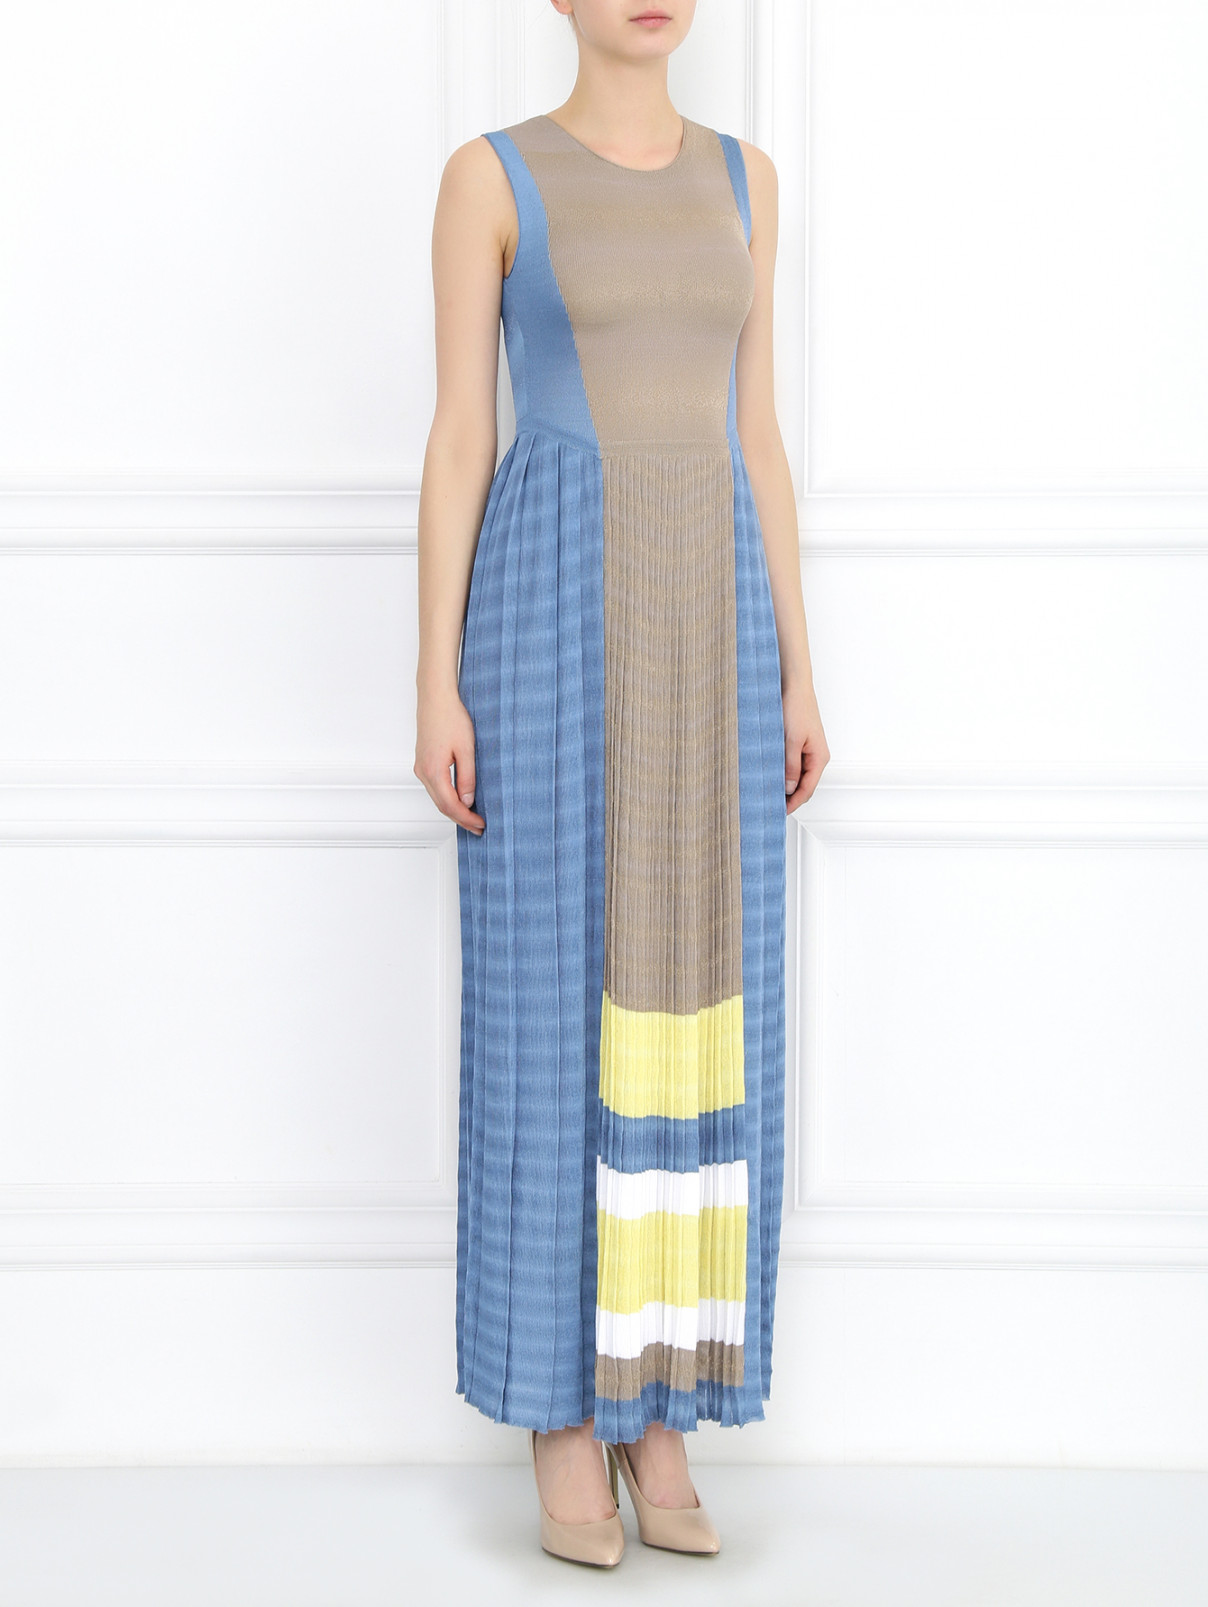 Платье-макси с контрастной вставкой Antonio Marras  –  Модель Общий вид  – Цвет:  Мультиколор